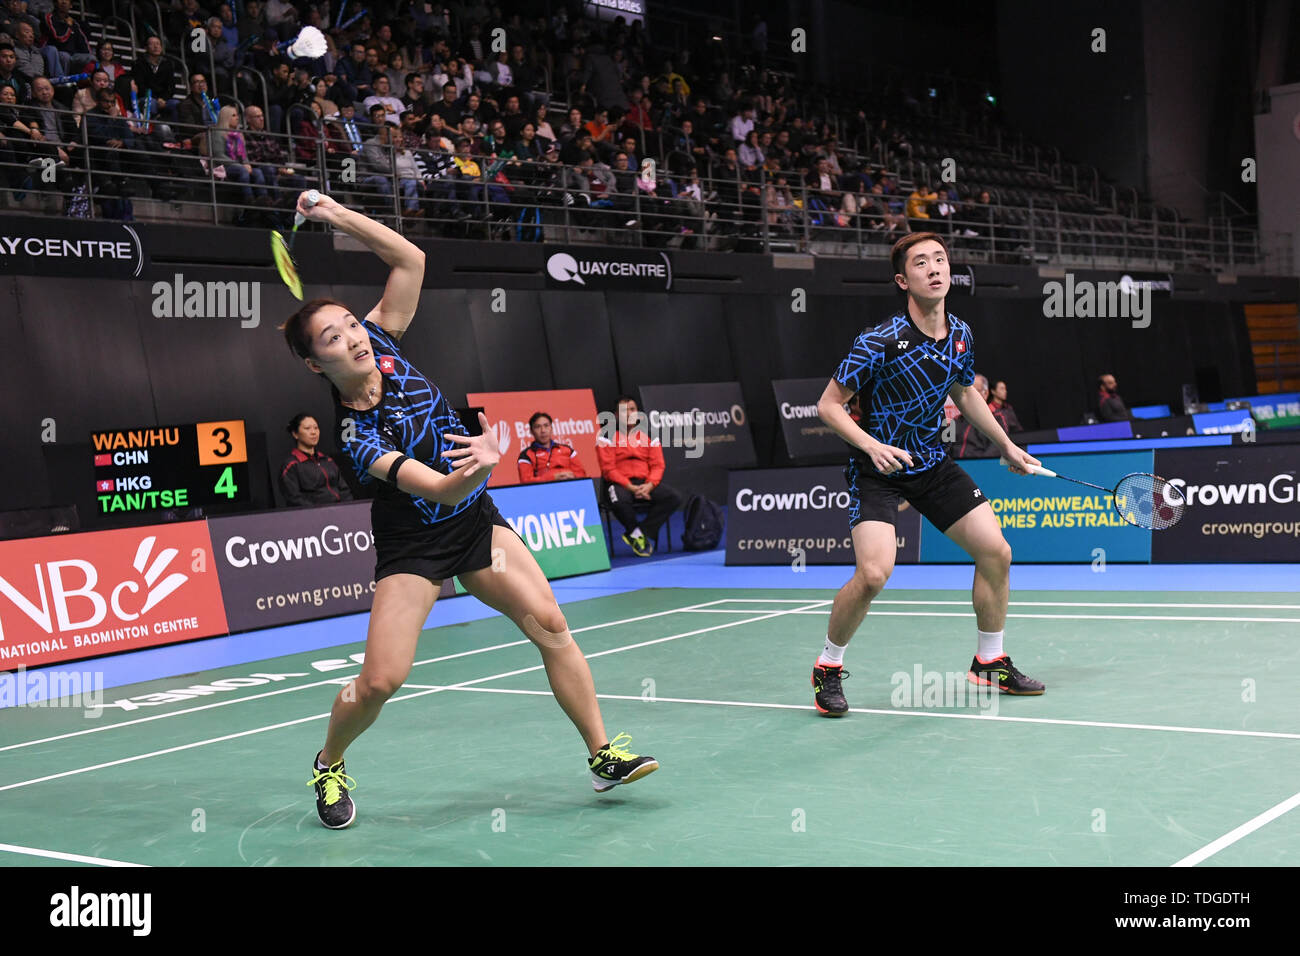 Tang Chun Man et Tse Ying Suet (Hong Kong) vu en action lors de  l'Australian Open 2019 Badminton Double mixte demi-finales match contre  Wang Dongping Yilyu et Huang (Chine). Tang et Tse